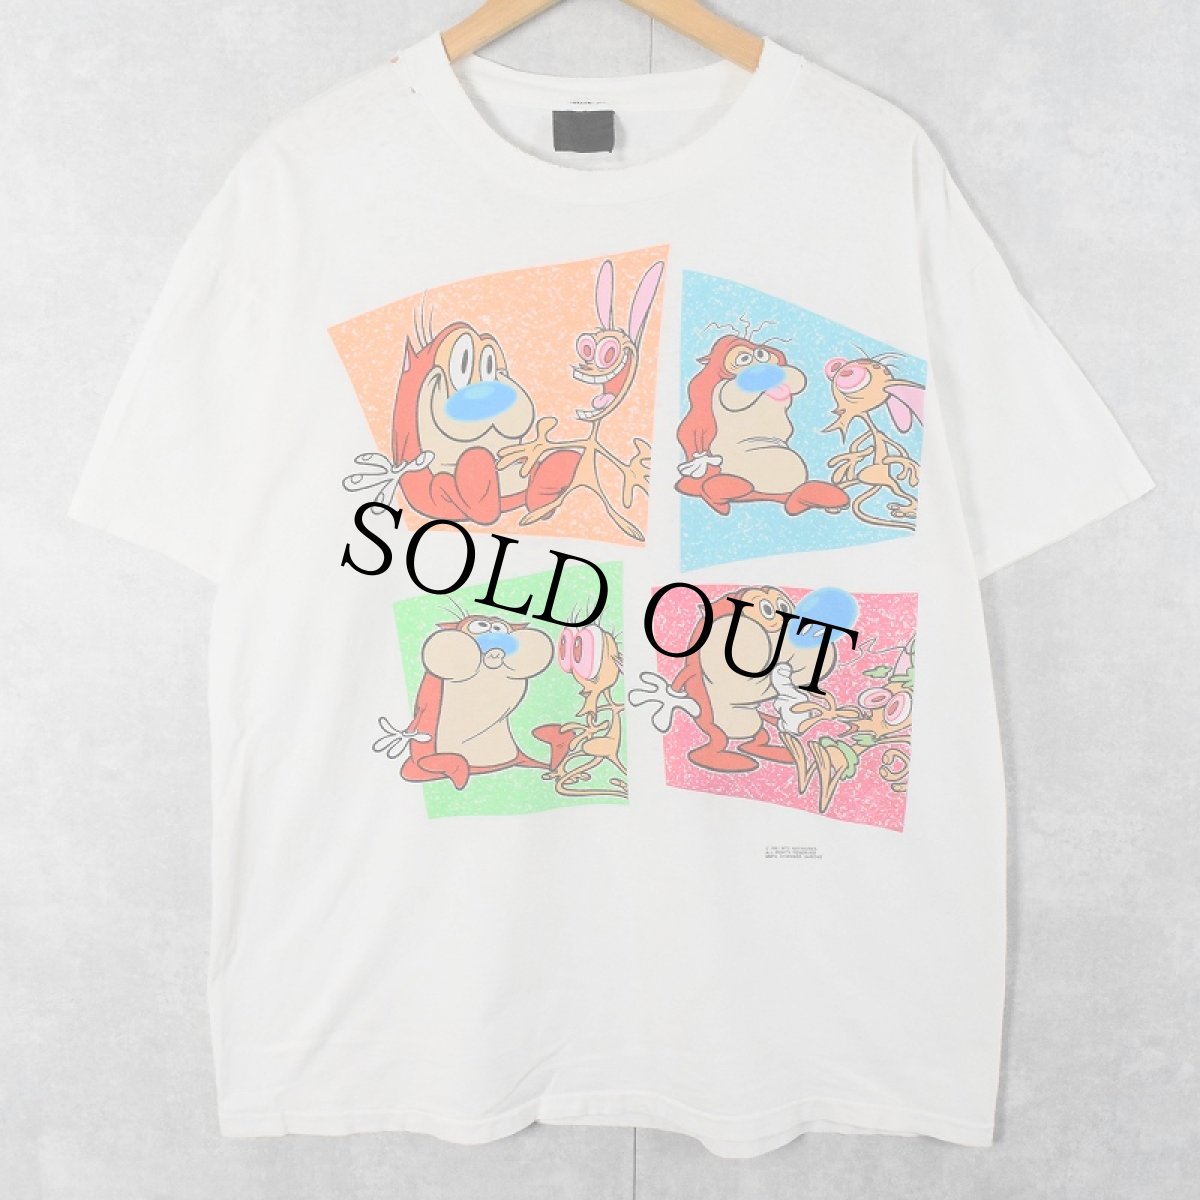 画像1: 【お客様専用ページ】90's Ren&Stimpy USA製 キャラクタープリントTシャツ XL (1)